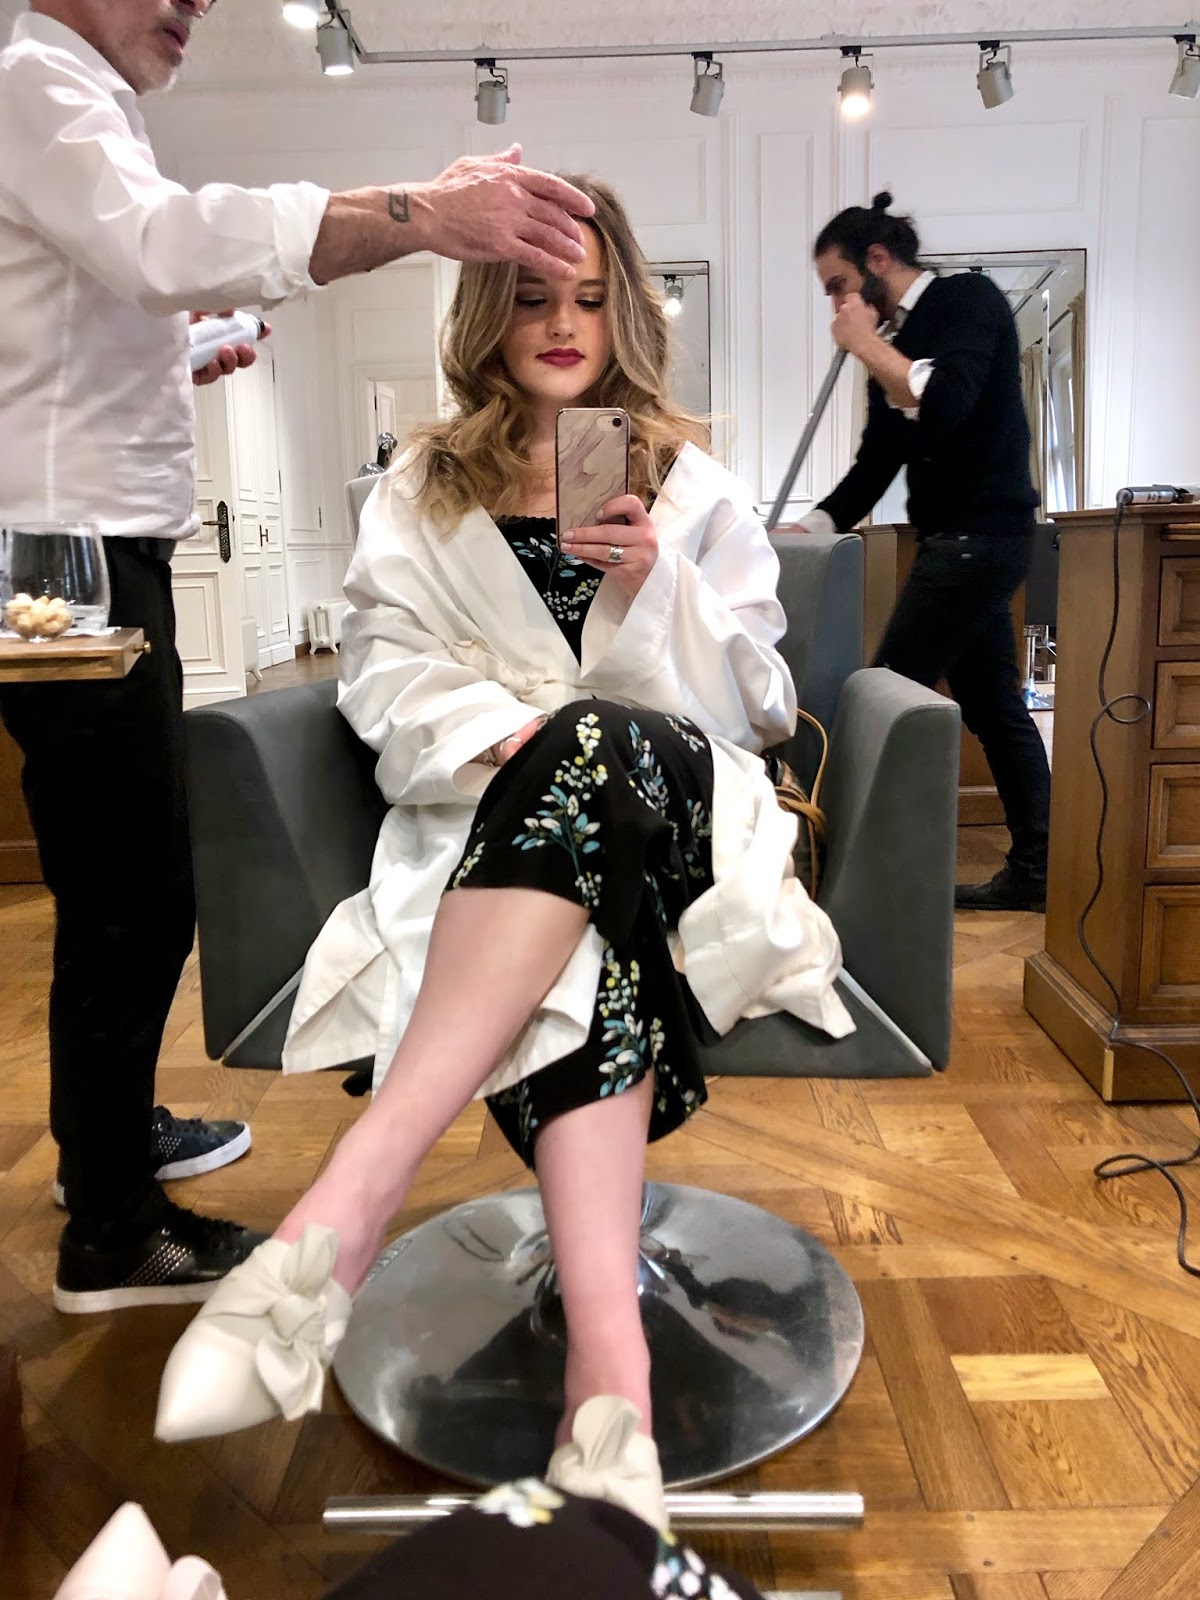 Balmain hair salon in Paris, France